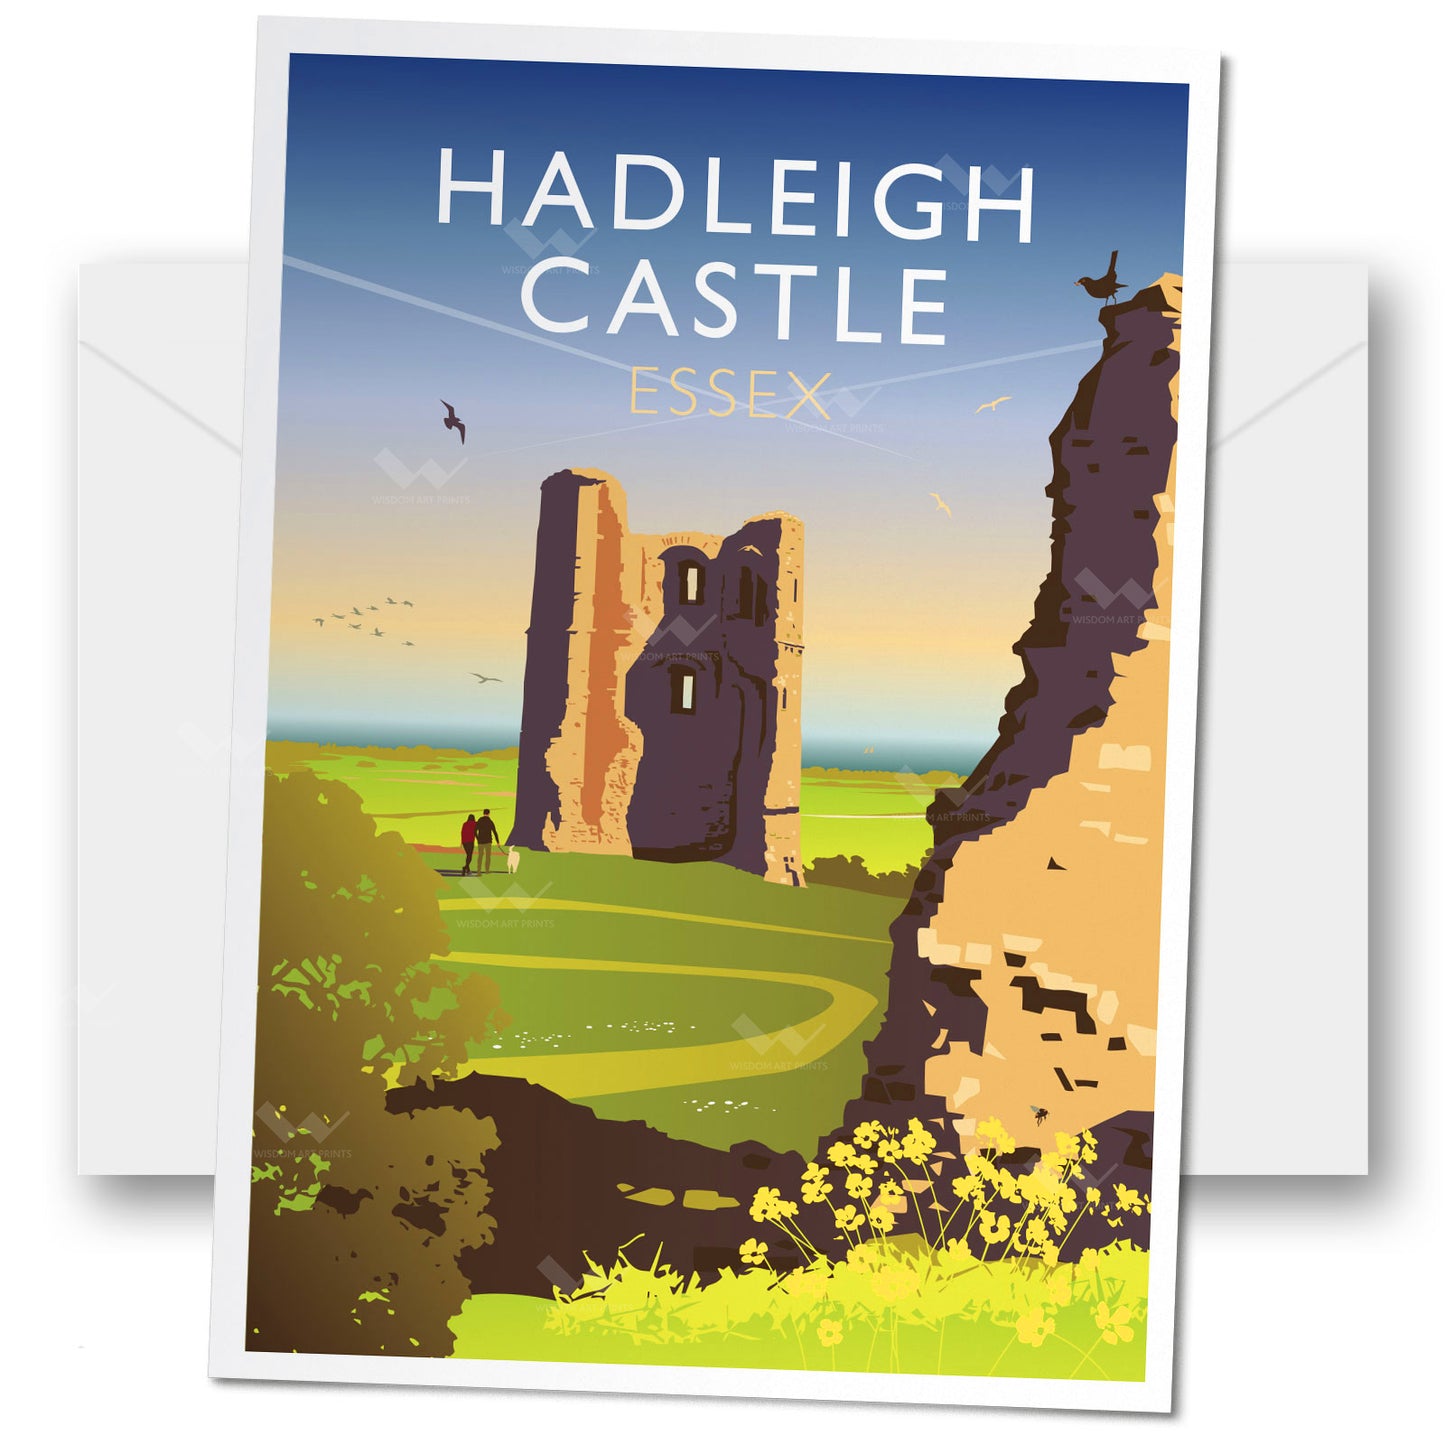 Hadleigh Castle, Essex